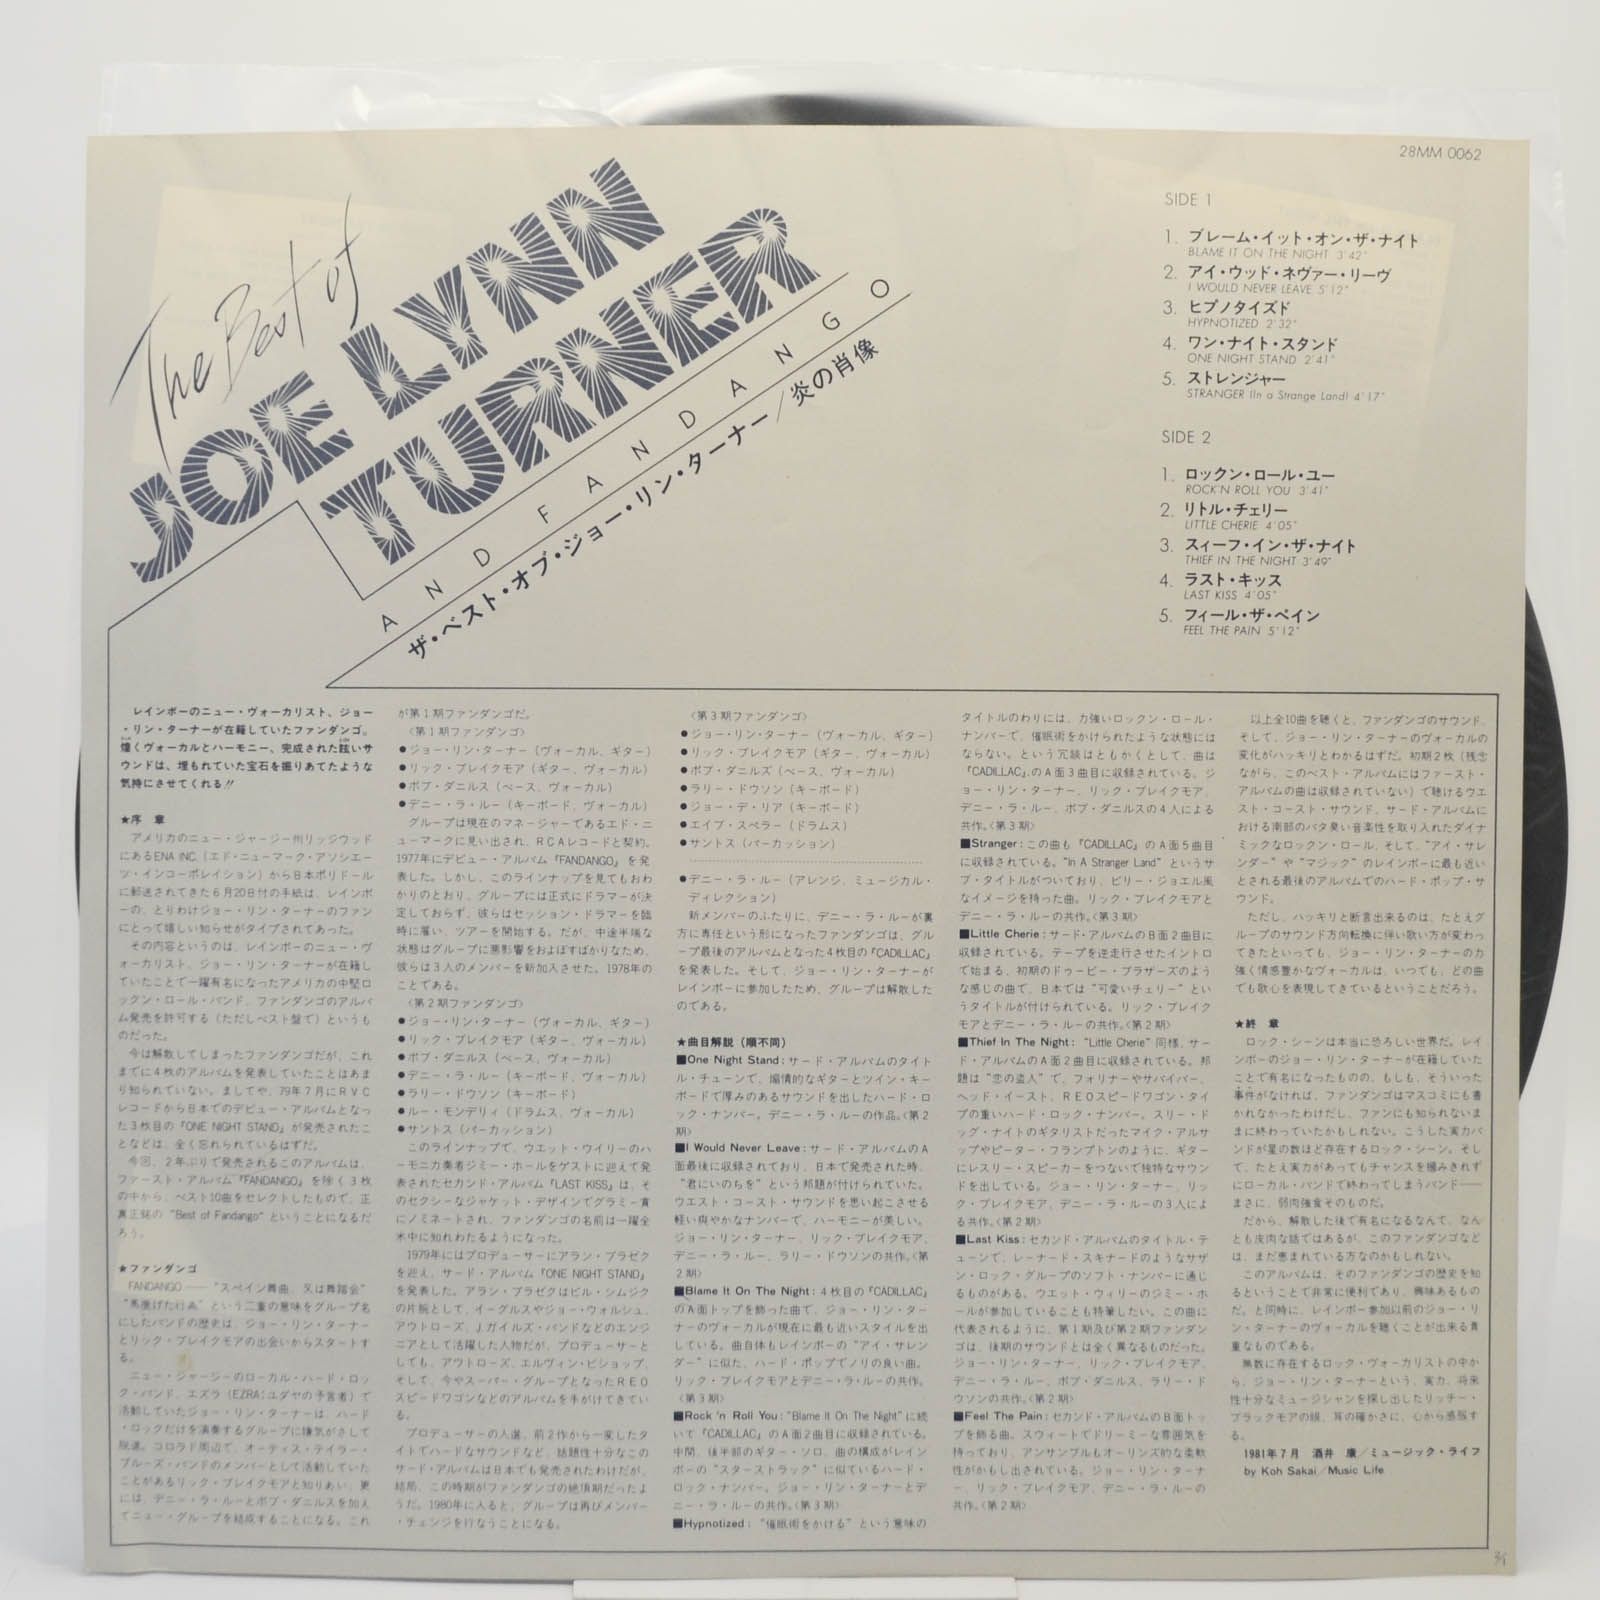 Joe Lynn Turner And Fandango — The Best Of Joe Lynn Turner And Fandango, 1981